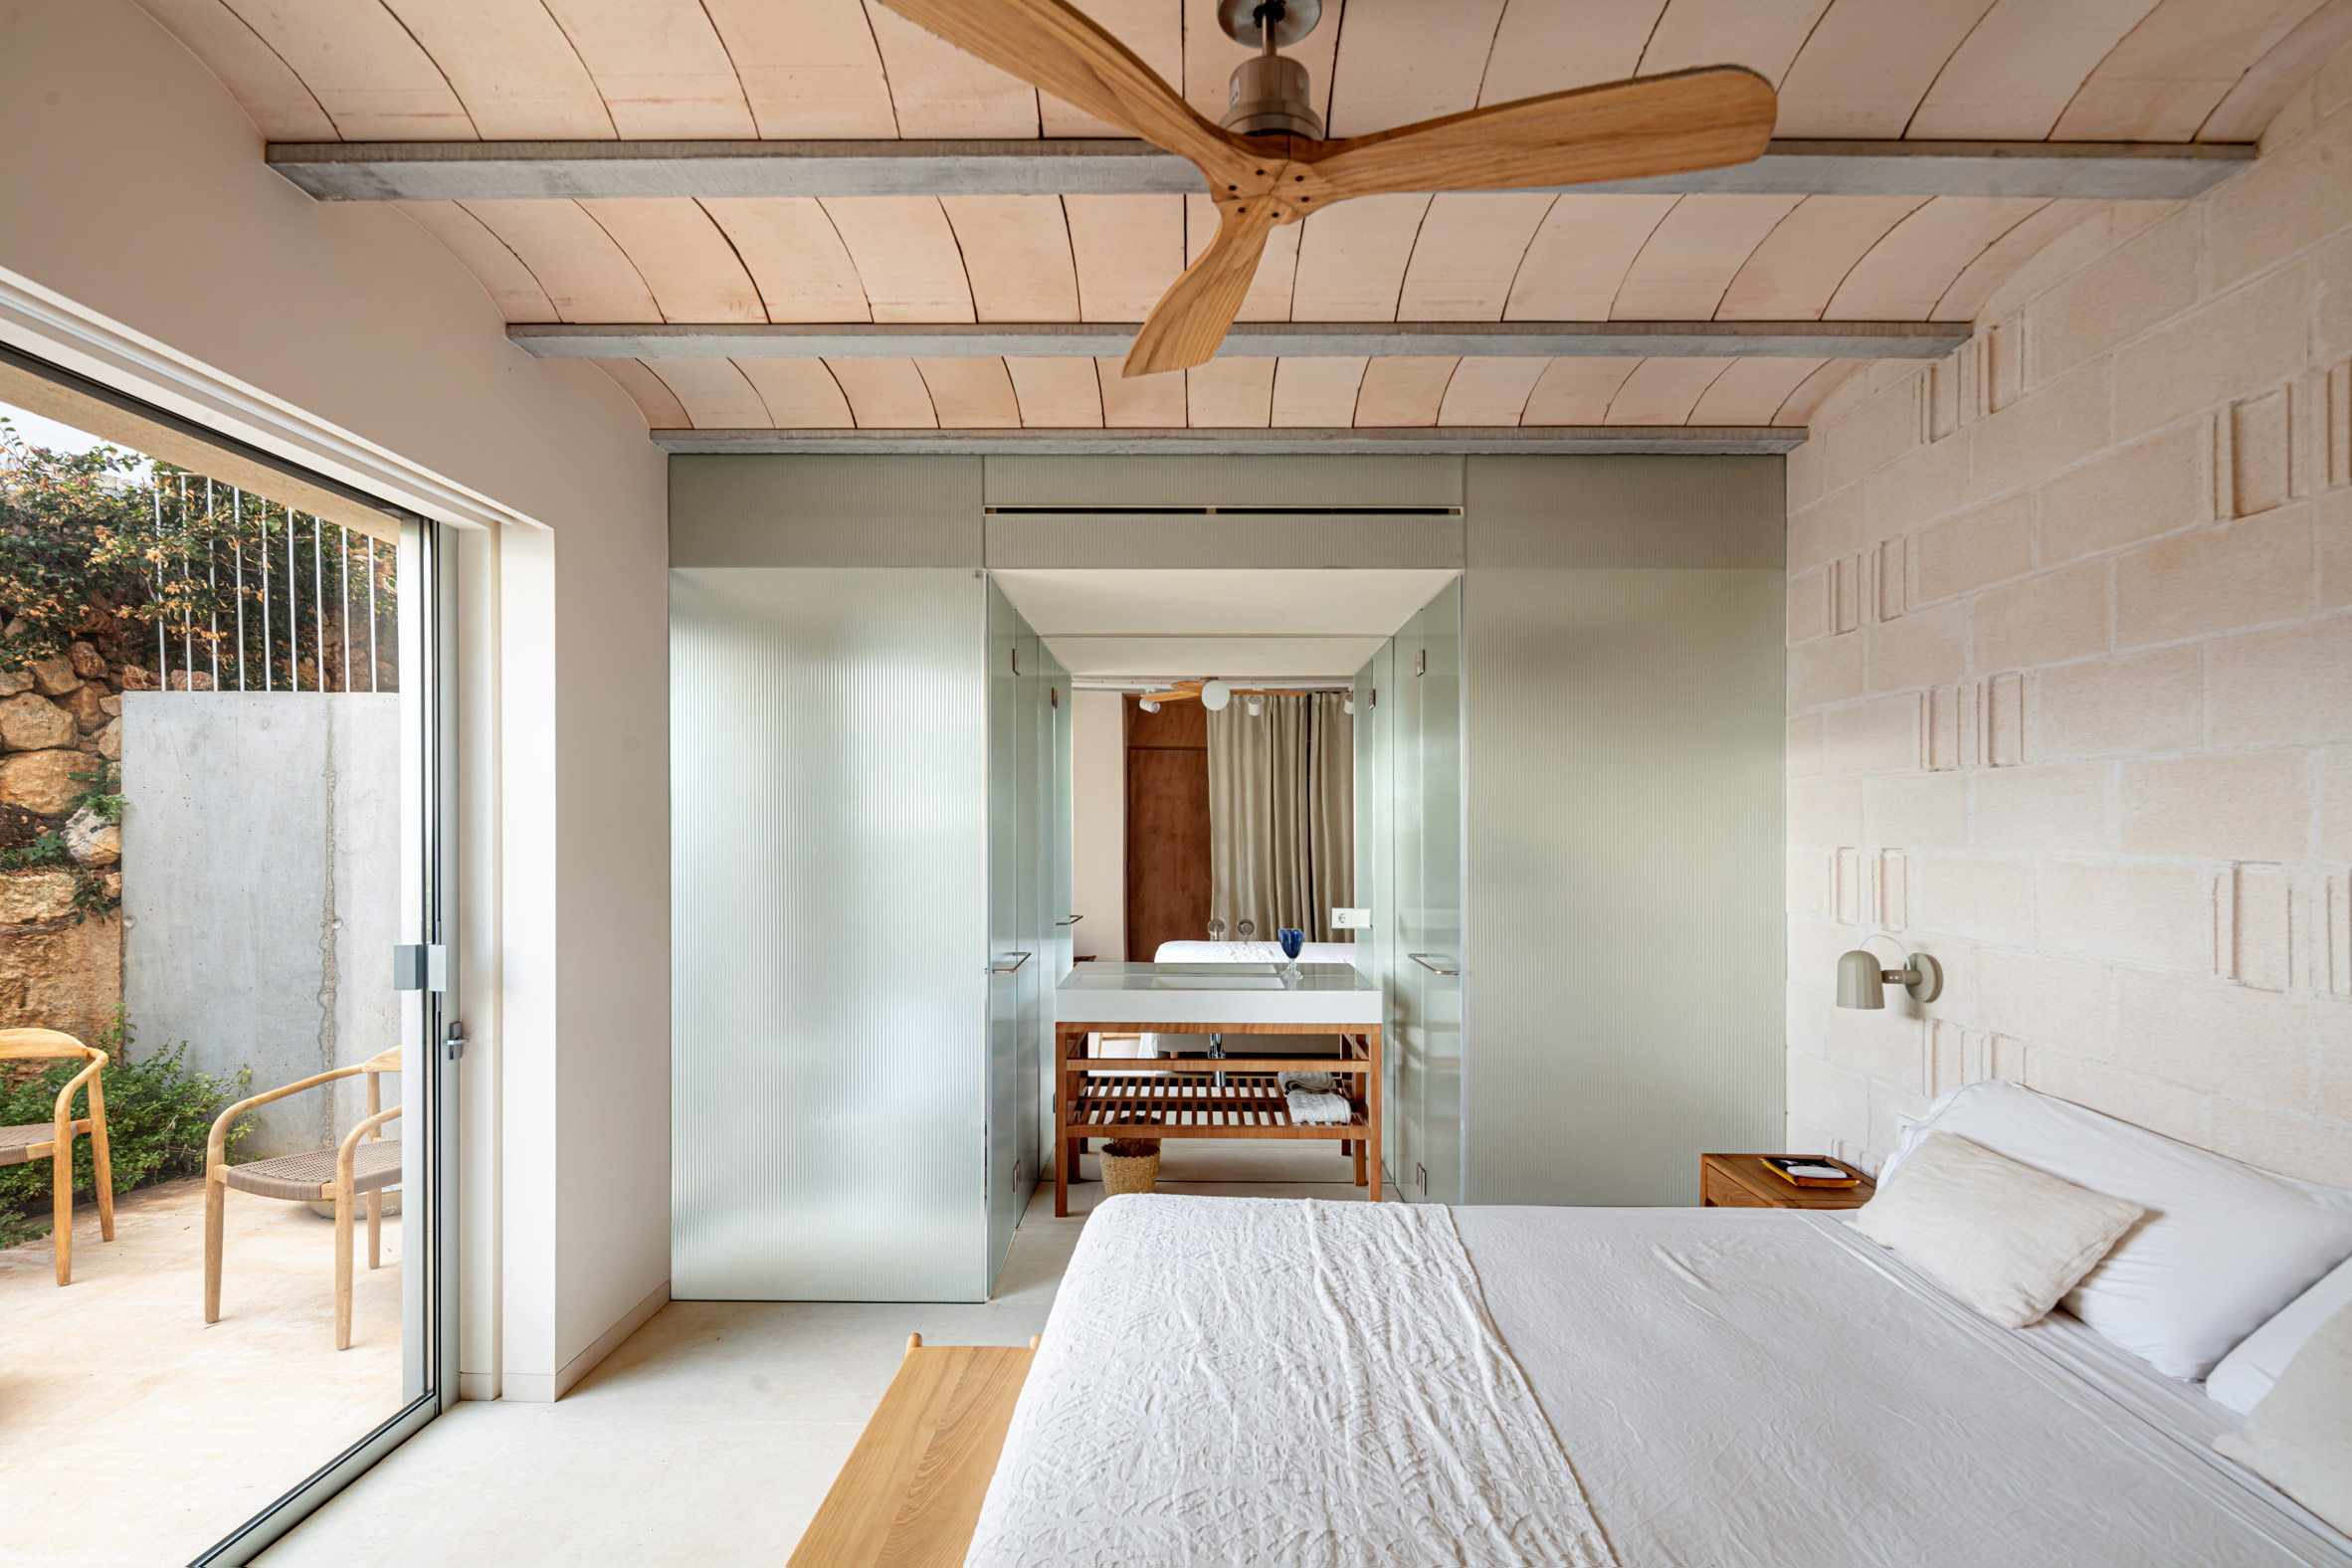 Bedroom interior at villa by Nomo Studio